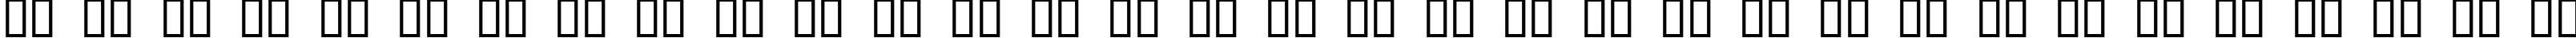 Пример написания русского алфавита шрифтом Antique No 14 Regular